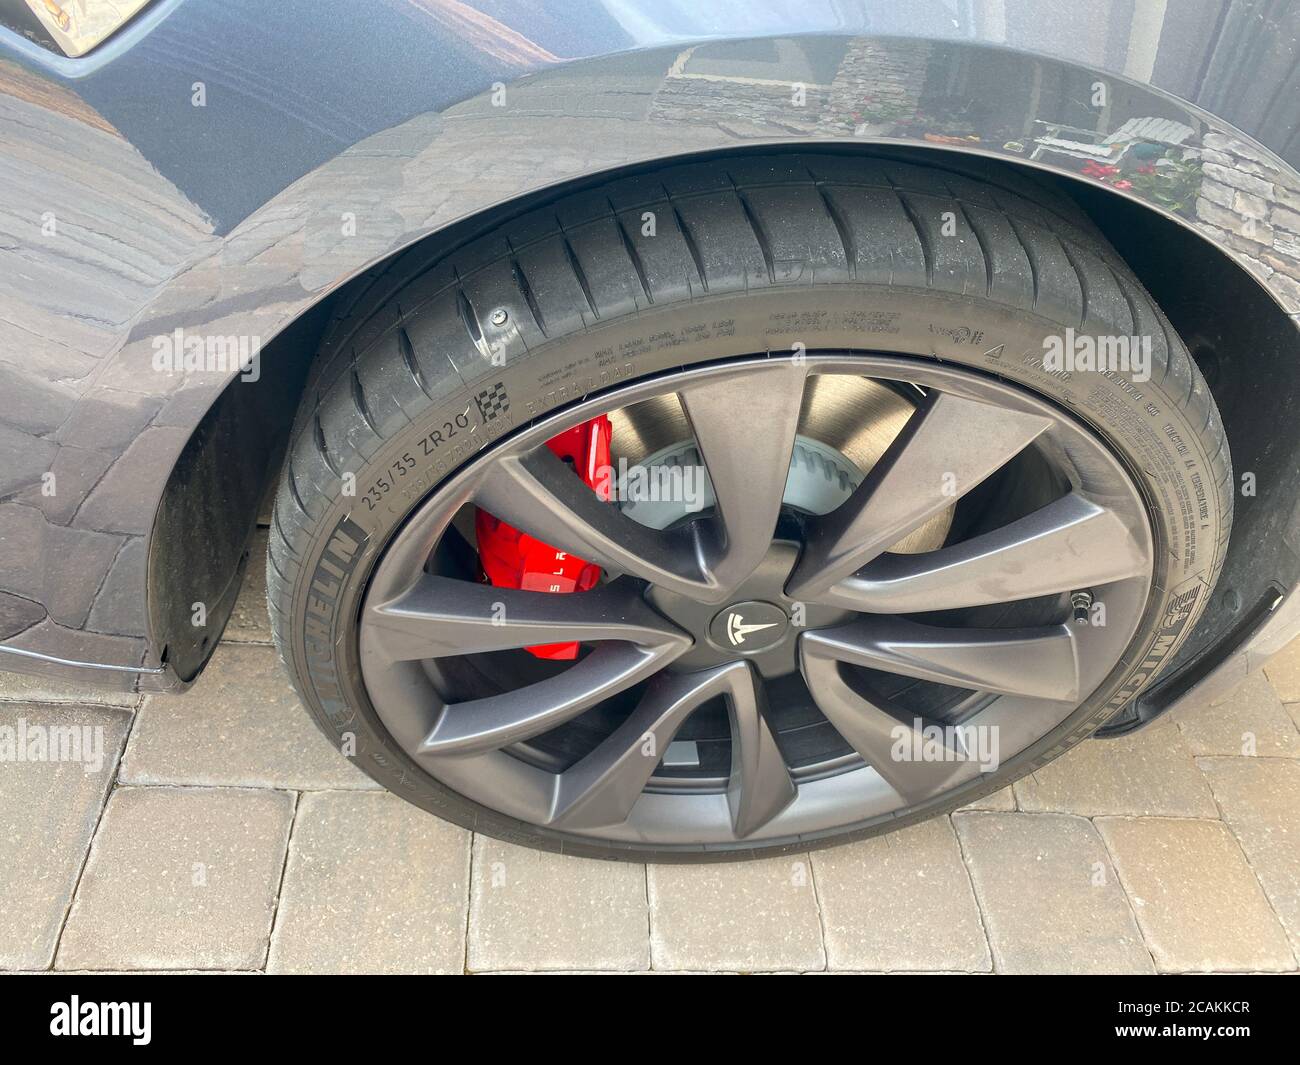 Orlando,FL/USA- 8/2/20: Una Tesla con un pneumatico Michelin che ha un chiodo nel battistrada da riparare o un nuovo pneumatico. Foto Stock